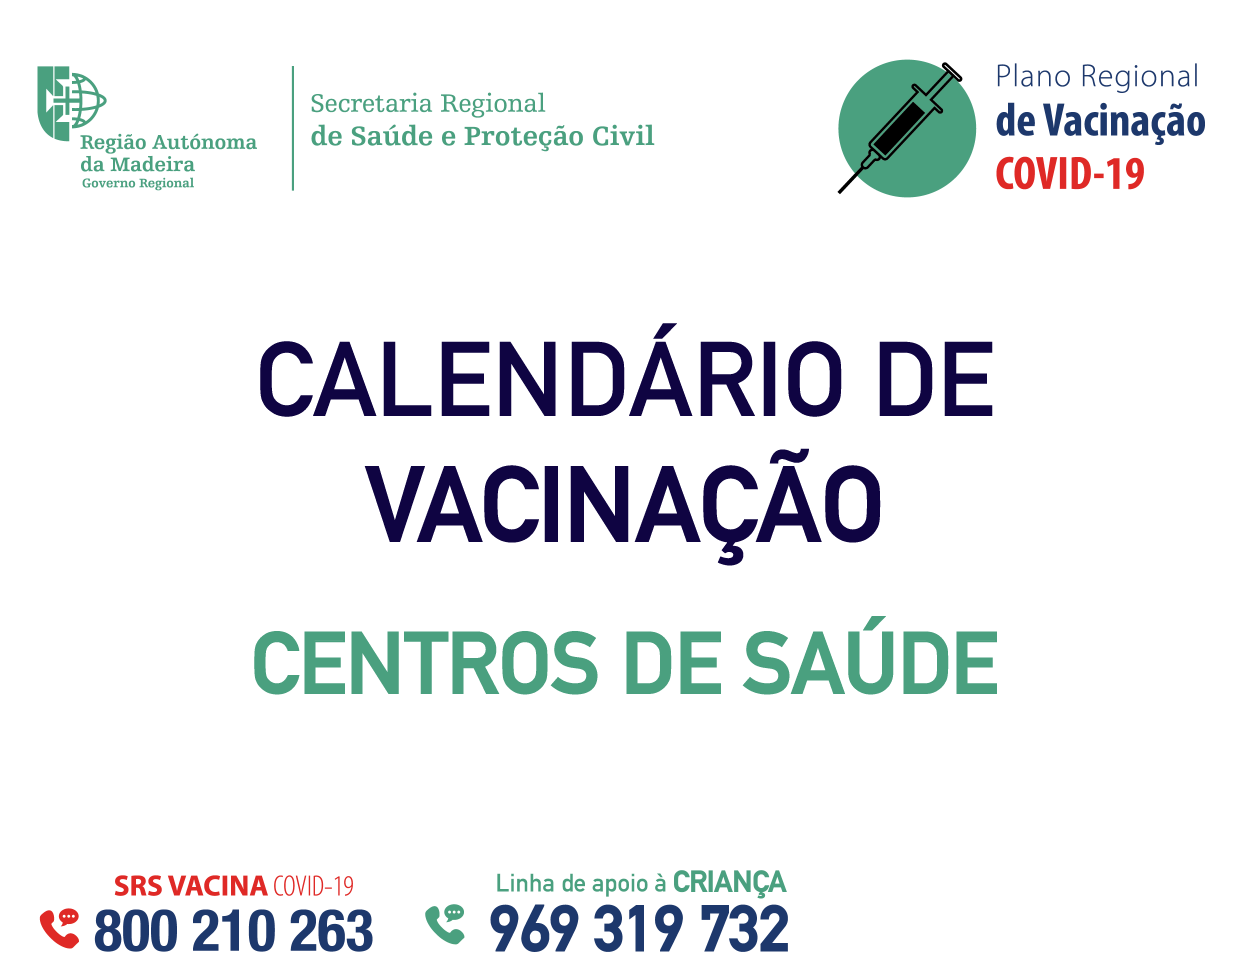 Calendário de Vacinação contra a COVID-19 nos Centros de Saúde: ABRIL